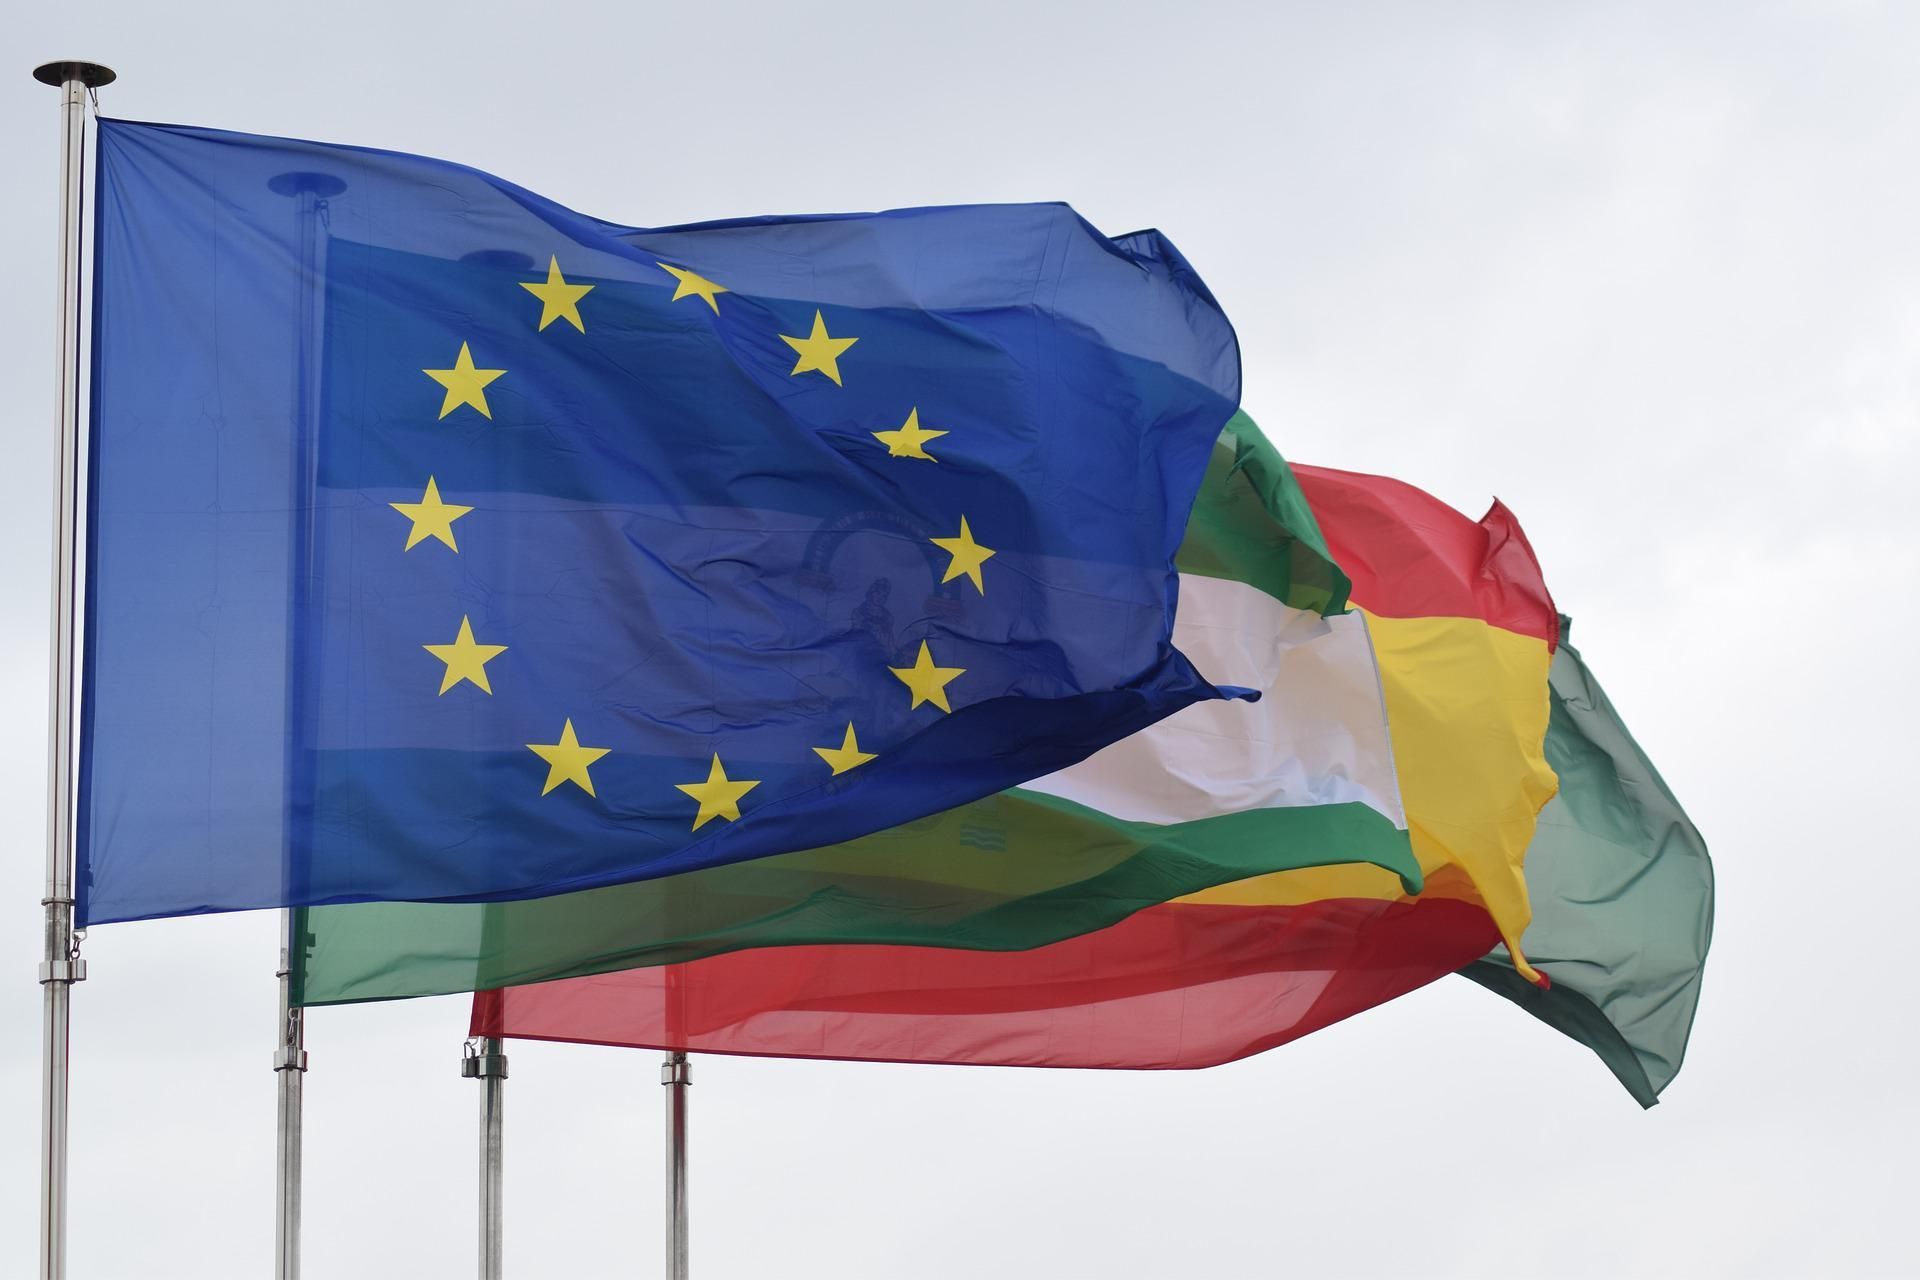 La bandiera dell'Unione Europea più in evidenza rispetto ad altre